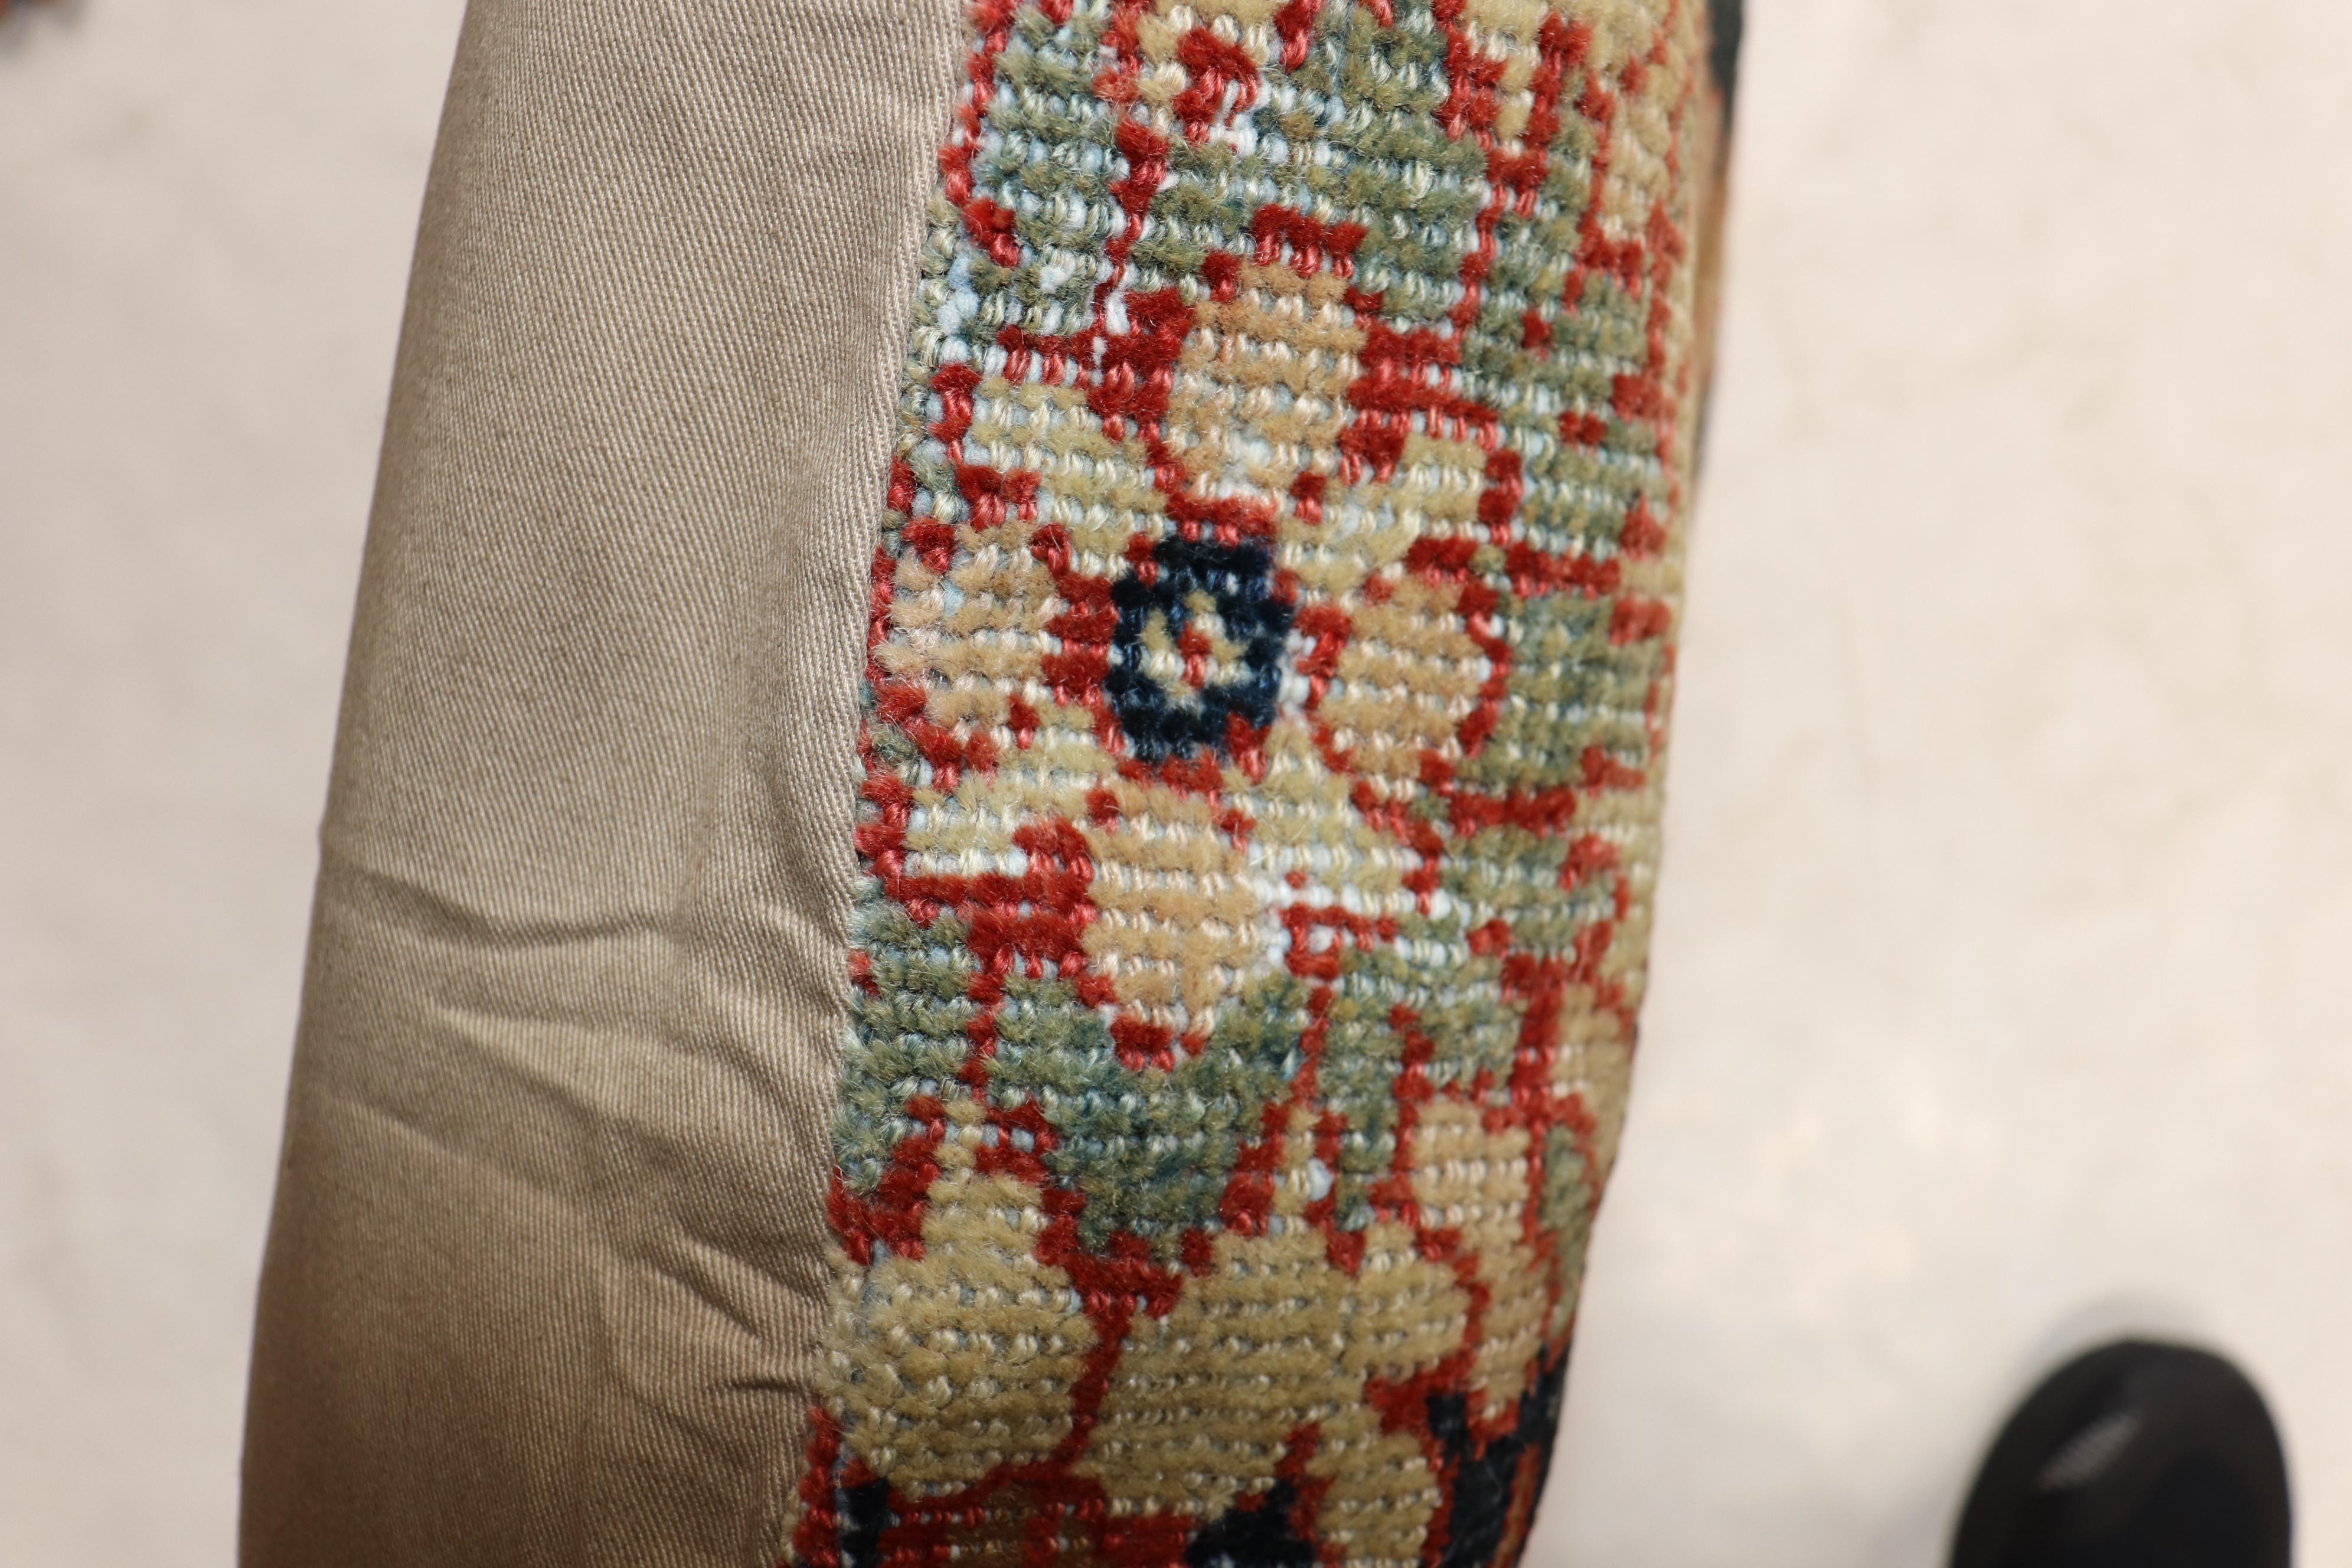 Kissen aus einem antiken persischen Mahal-Teppich mit einer Baumwollrückseite und Reißverschluss.

Maße: 24